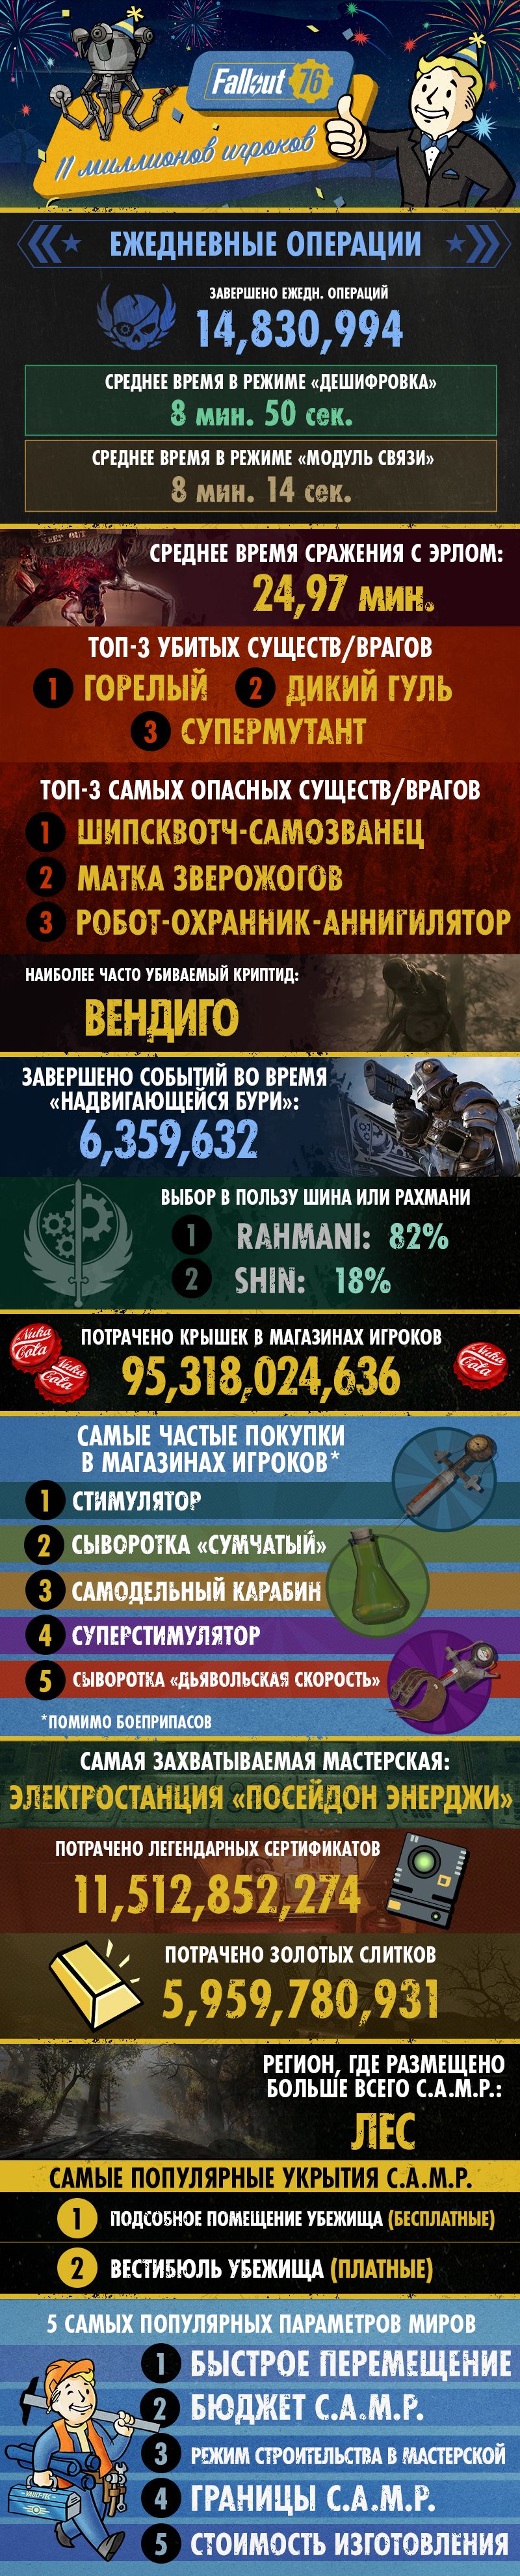 Инфографика Fallout 76